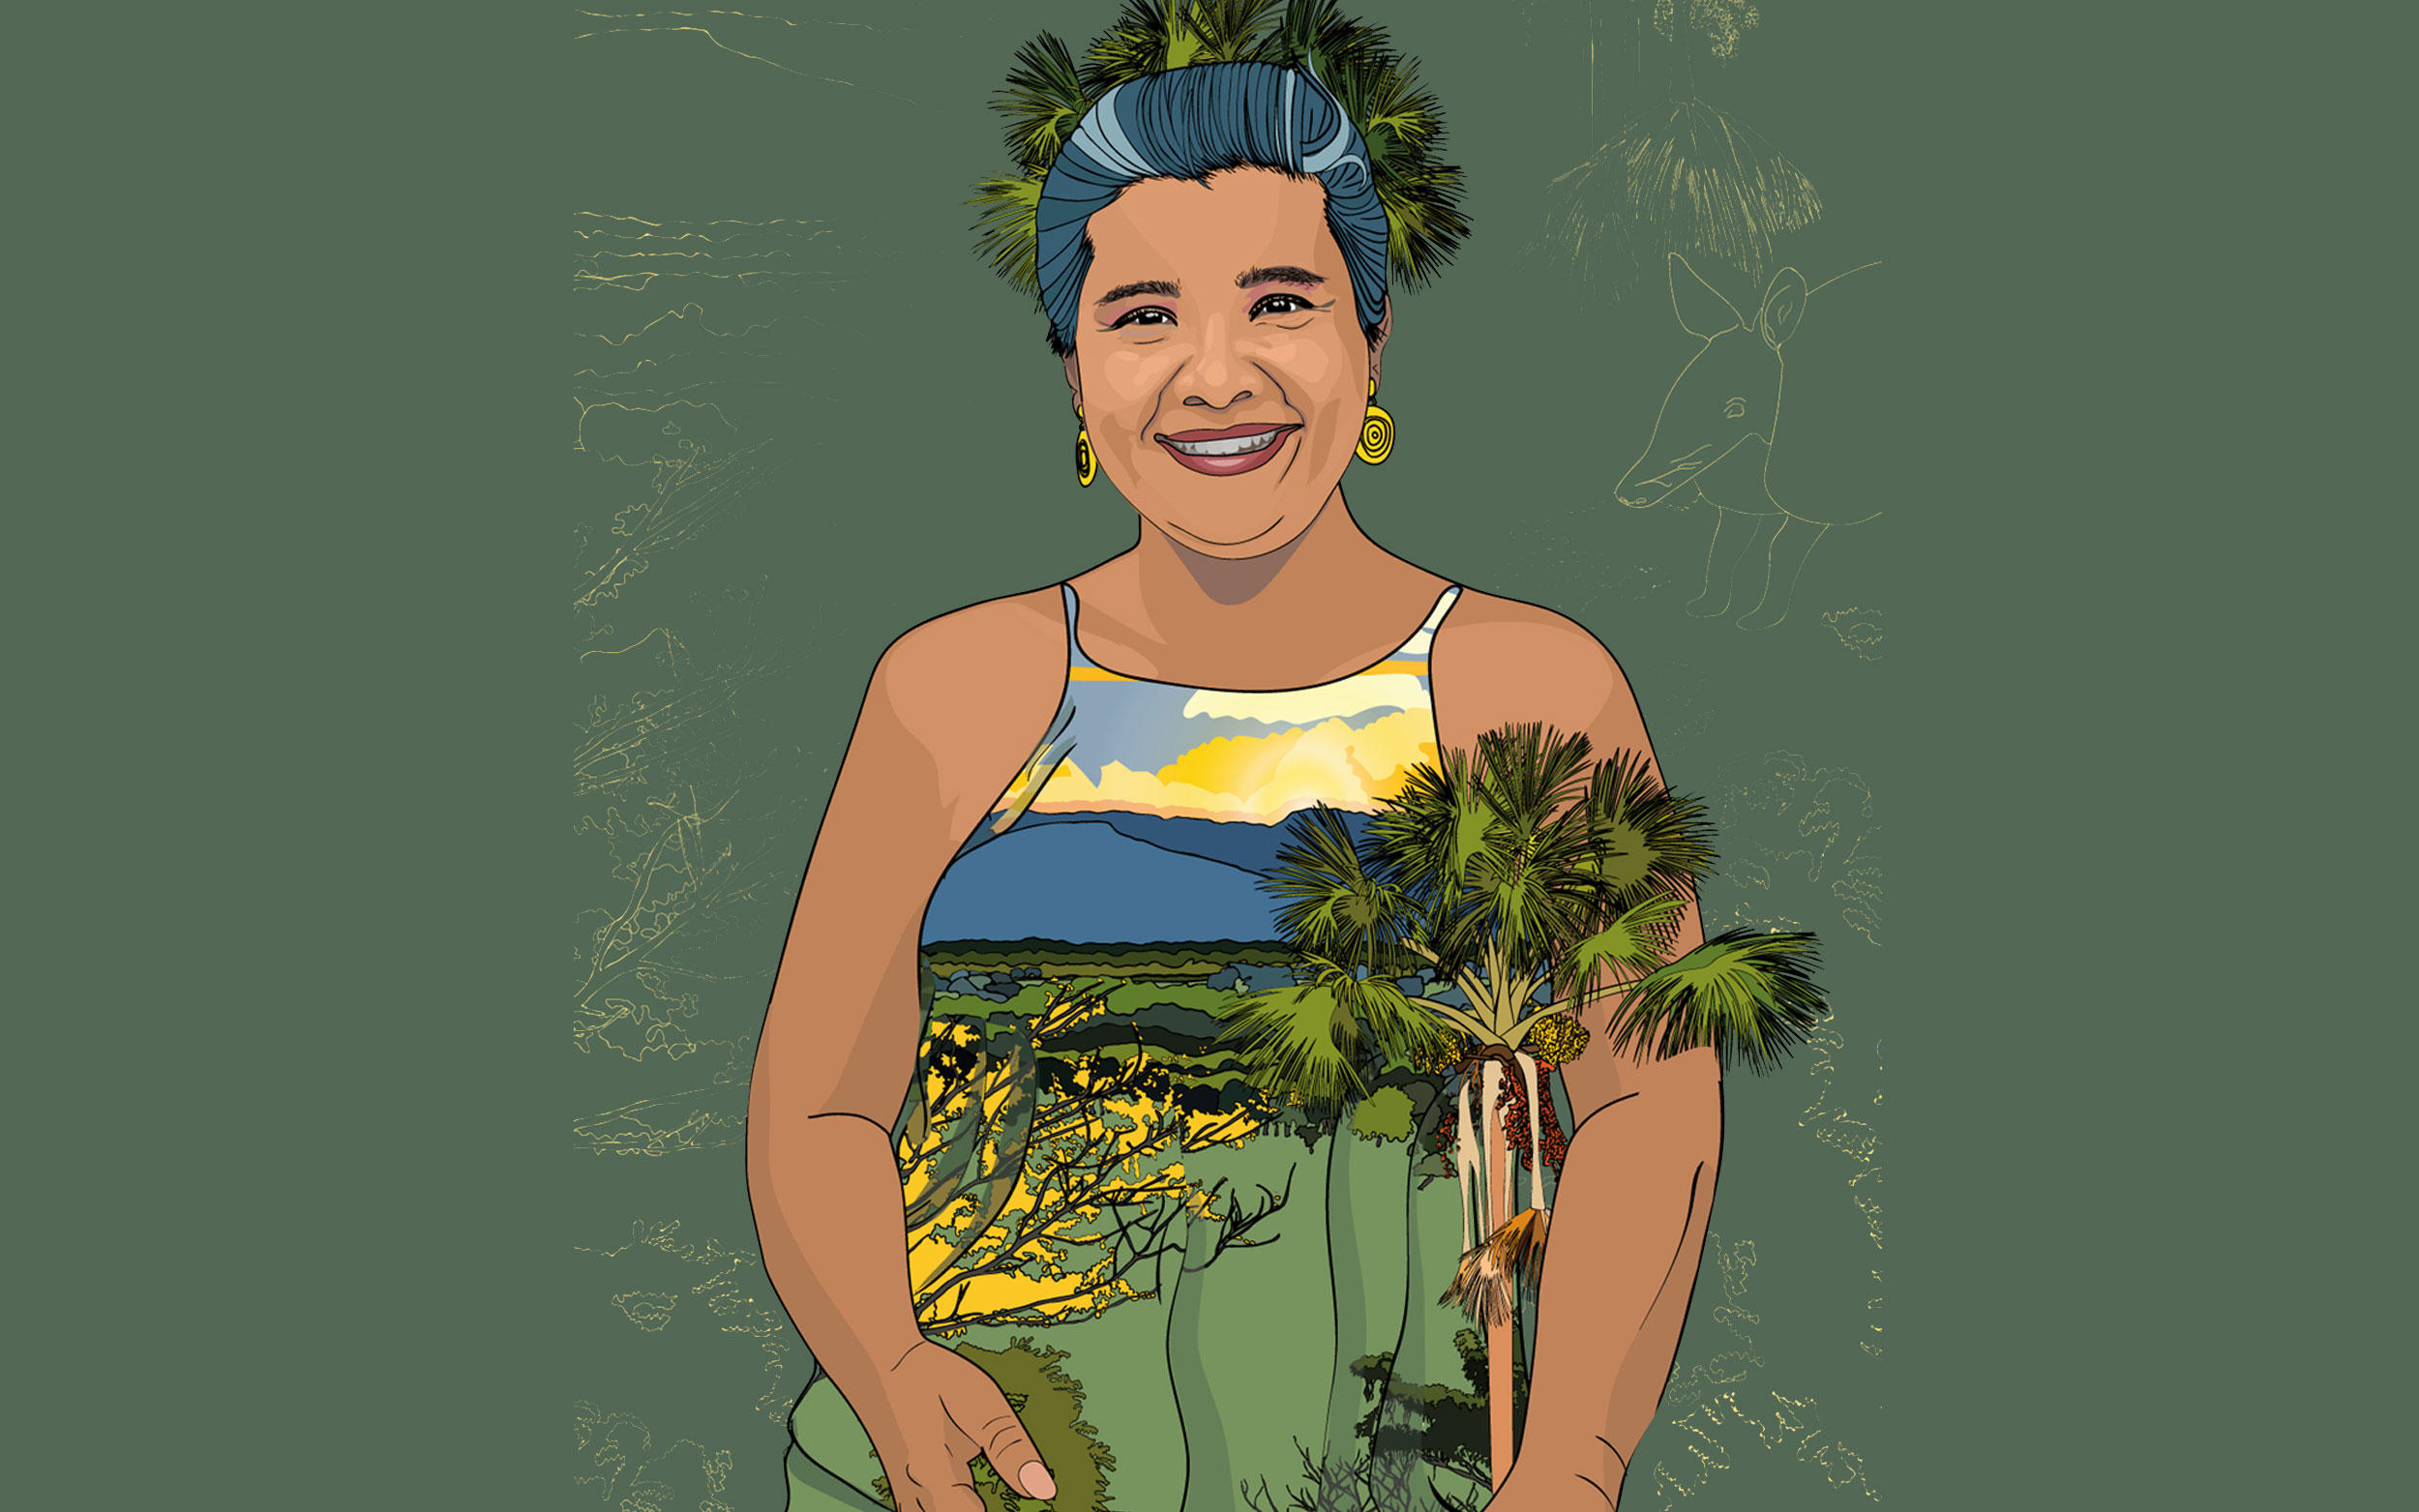 Retrato ilustrado de Viviana, pelo recogido. Vestido de tiras con paisaje estampado, hojas de palma a su alrededor